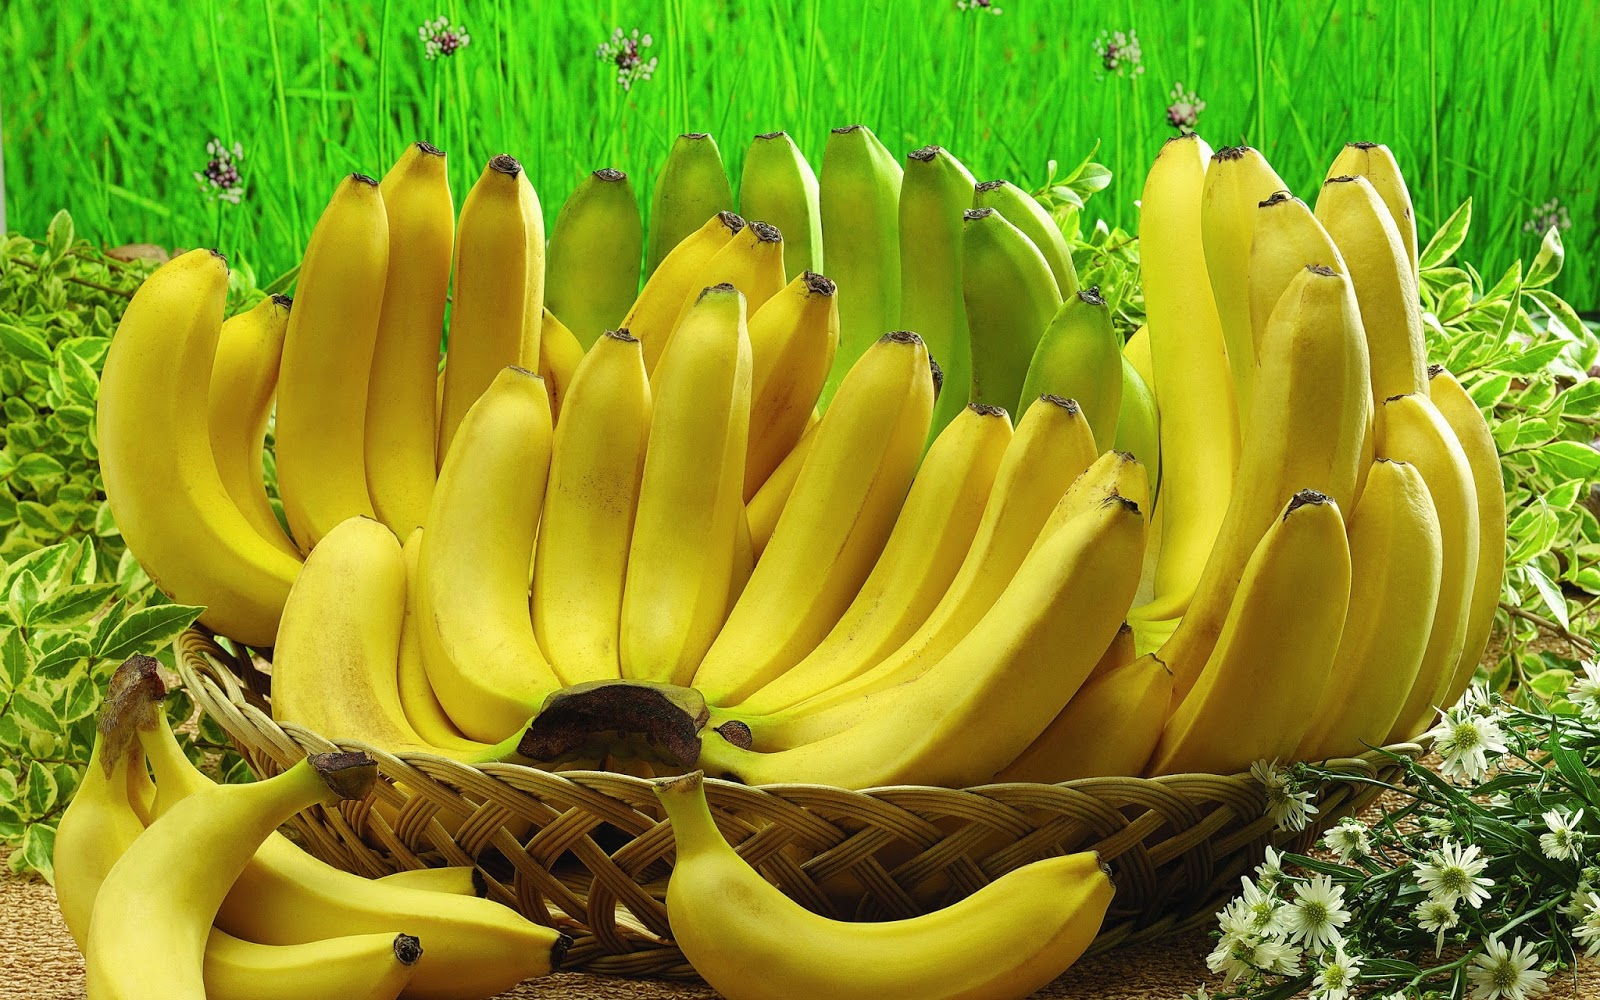 manfaat jantung pisang